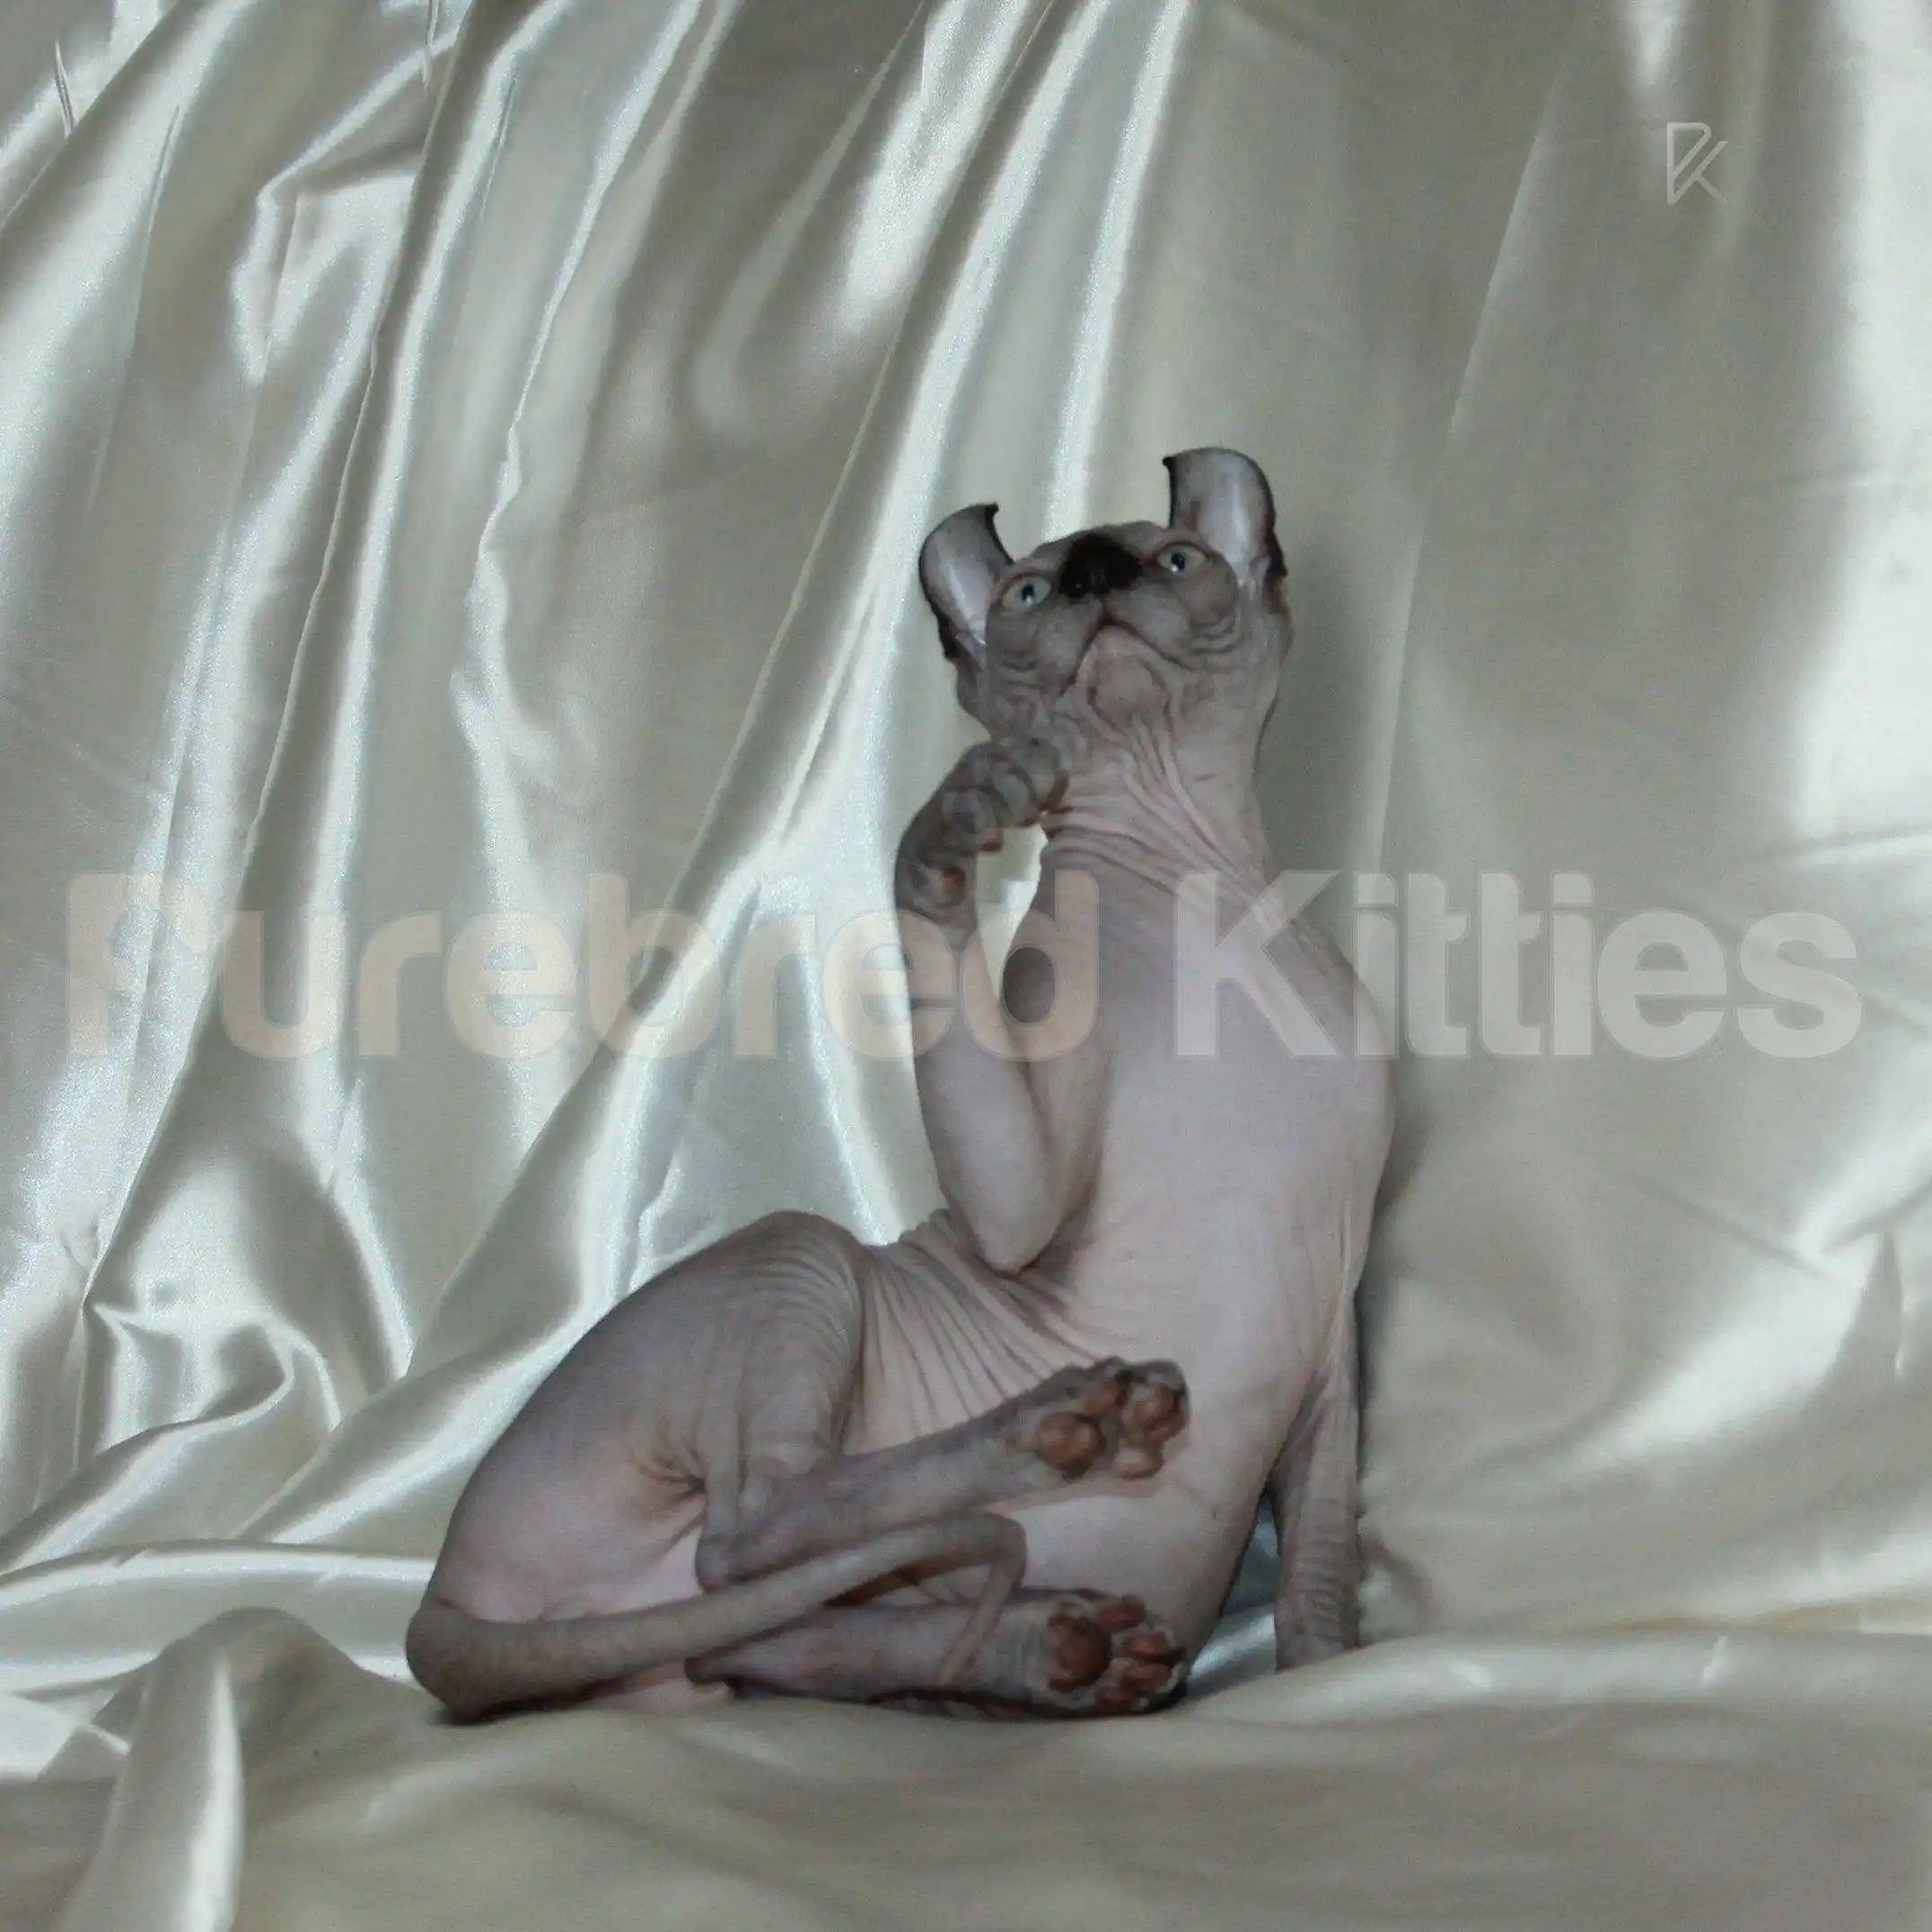 Sphynx Cats for Sale | Kittens For Wayne | Elf Kitten